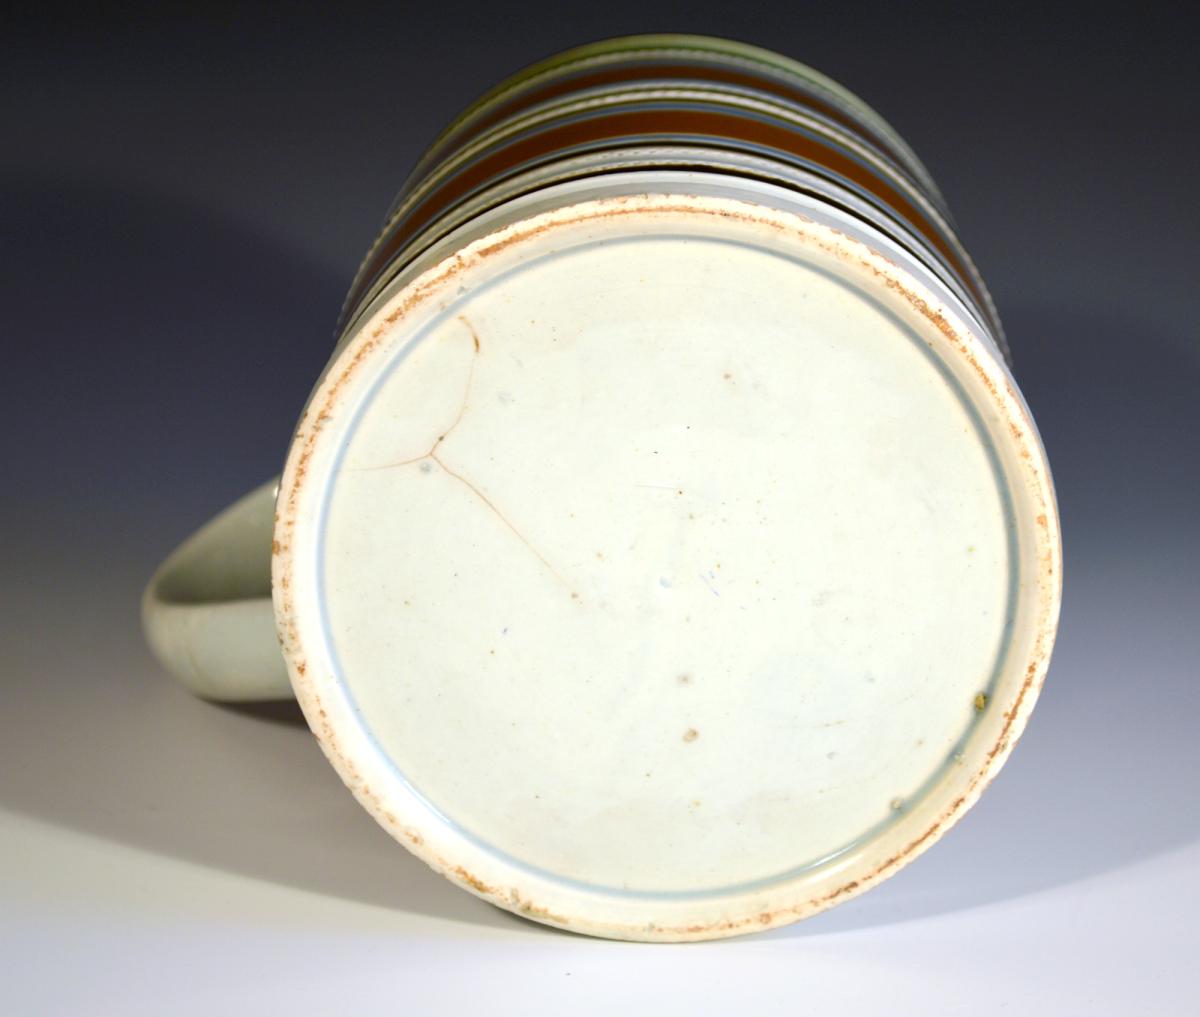 Mocha Pottery Tankard With Ochre & Green Colors, Circa 1800-20